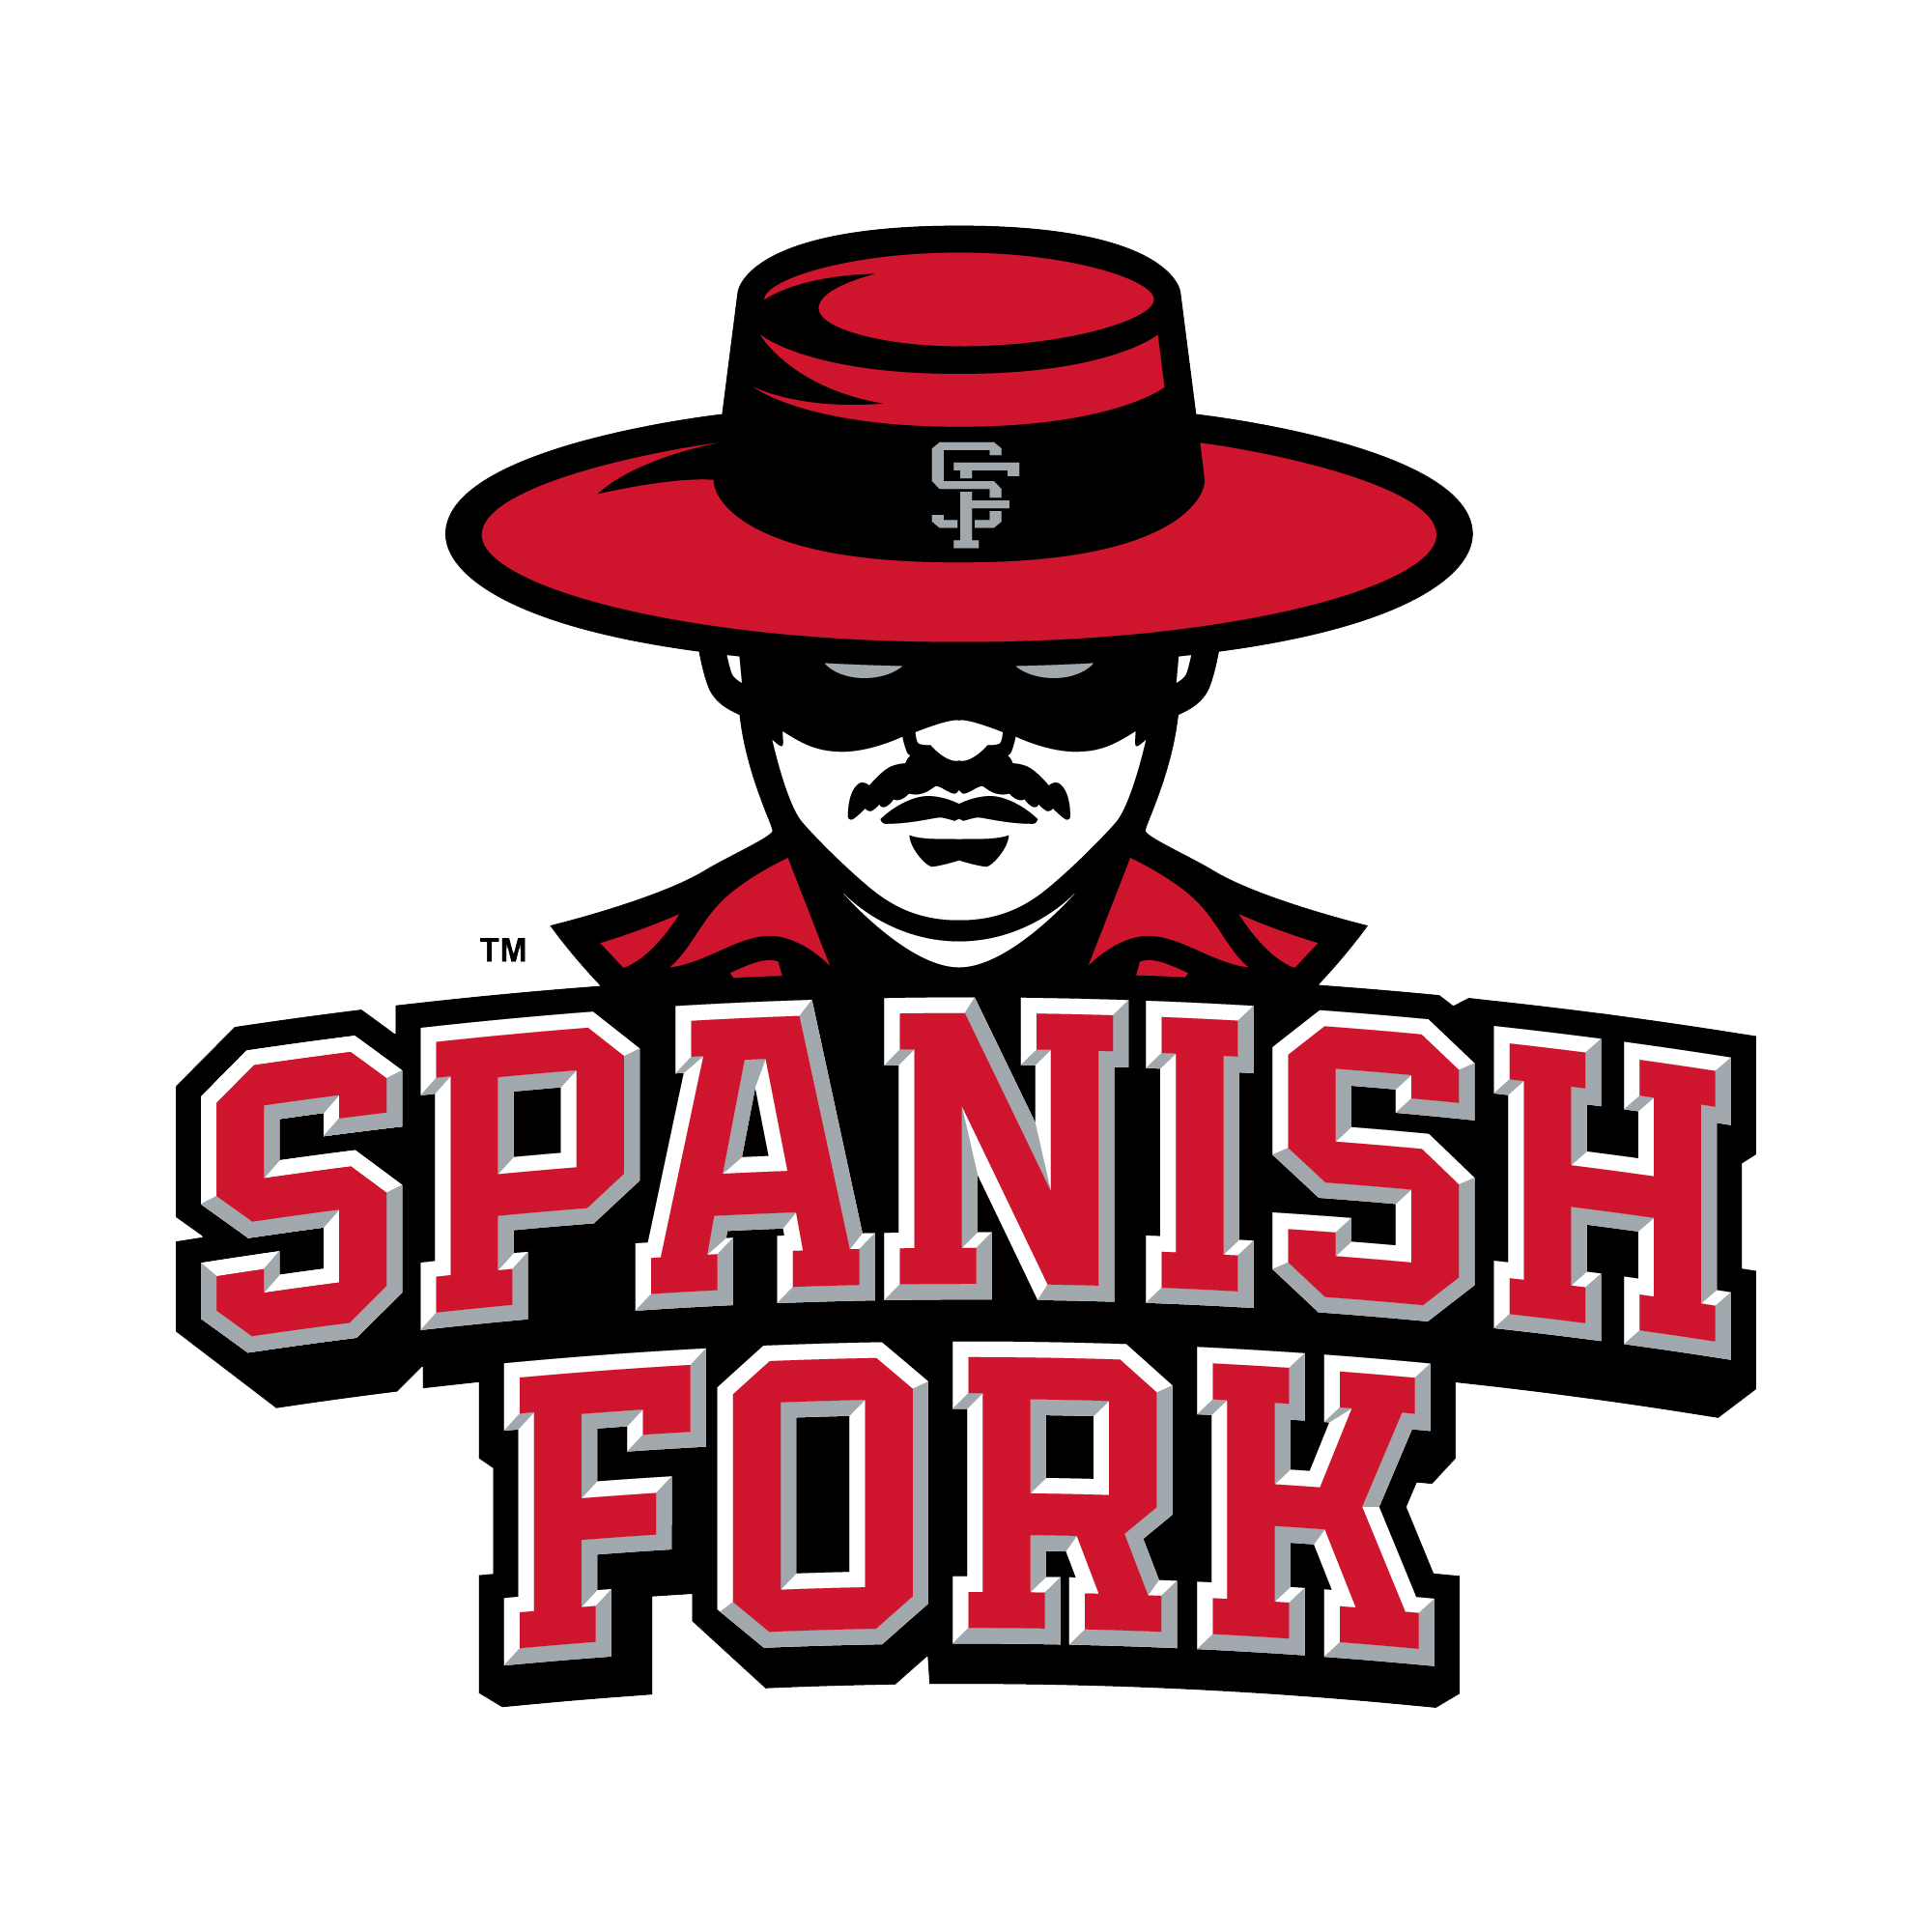 Spanish Fork